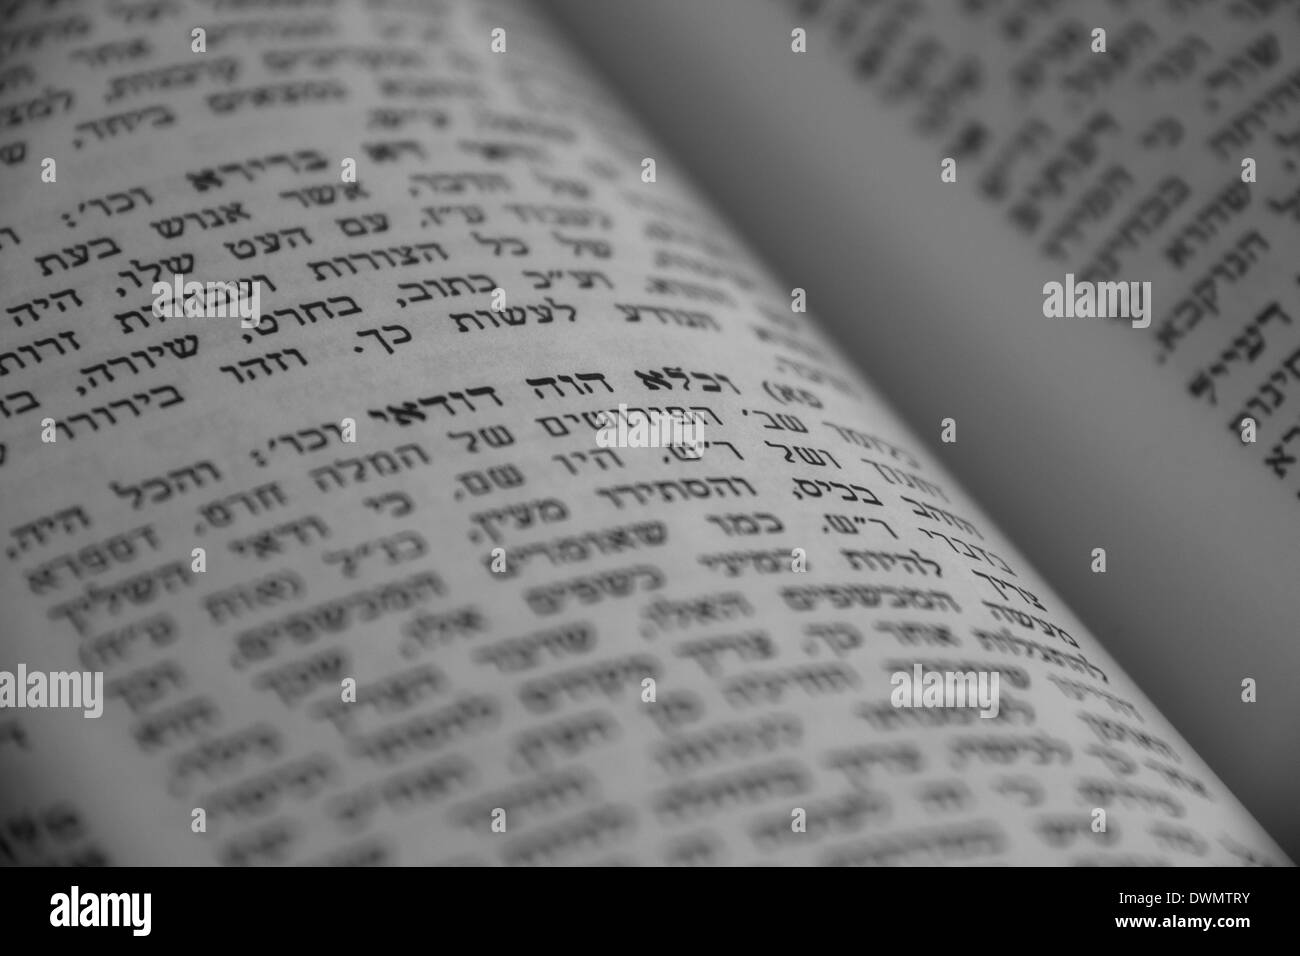 Fragment de kabbalistique mystique 'Zohar' Livre - La connaissance ésotérique du judaïsme médiéval.Image en noir et blanc Banque D'Images